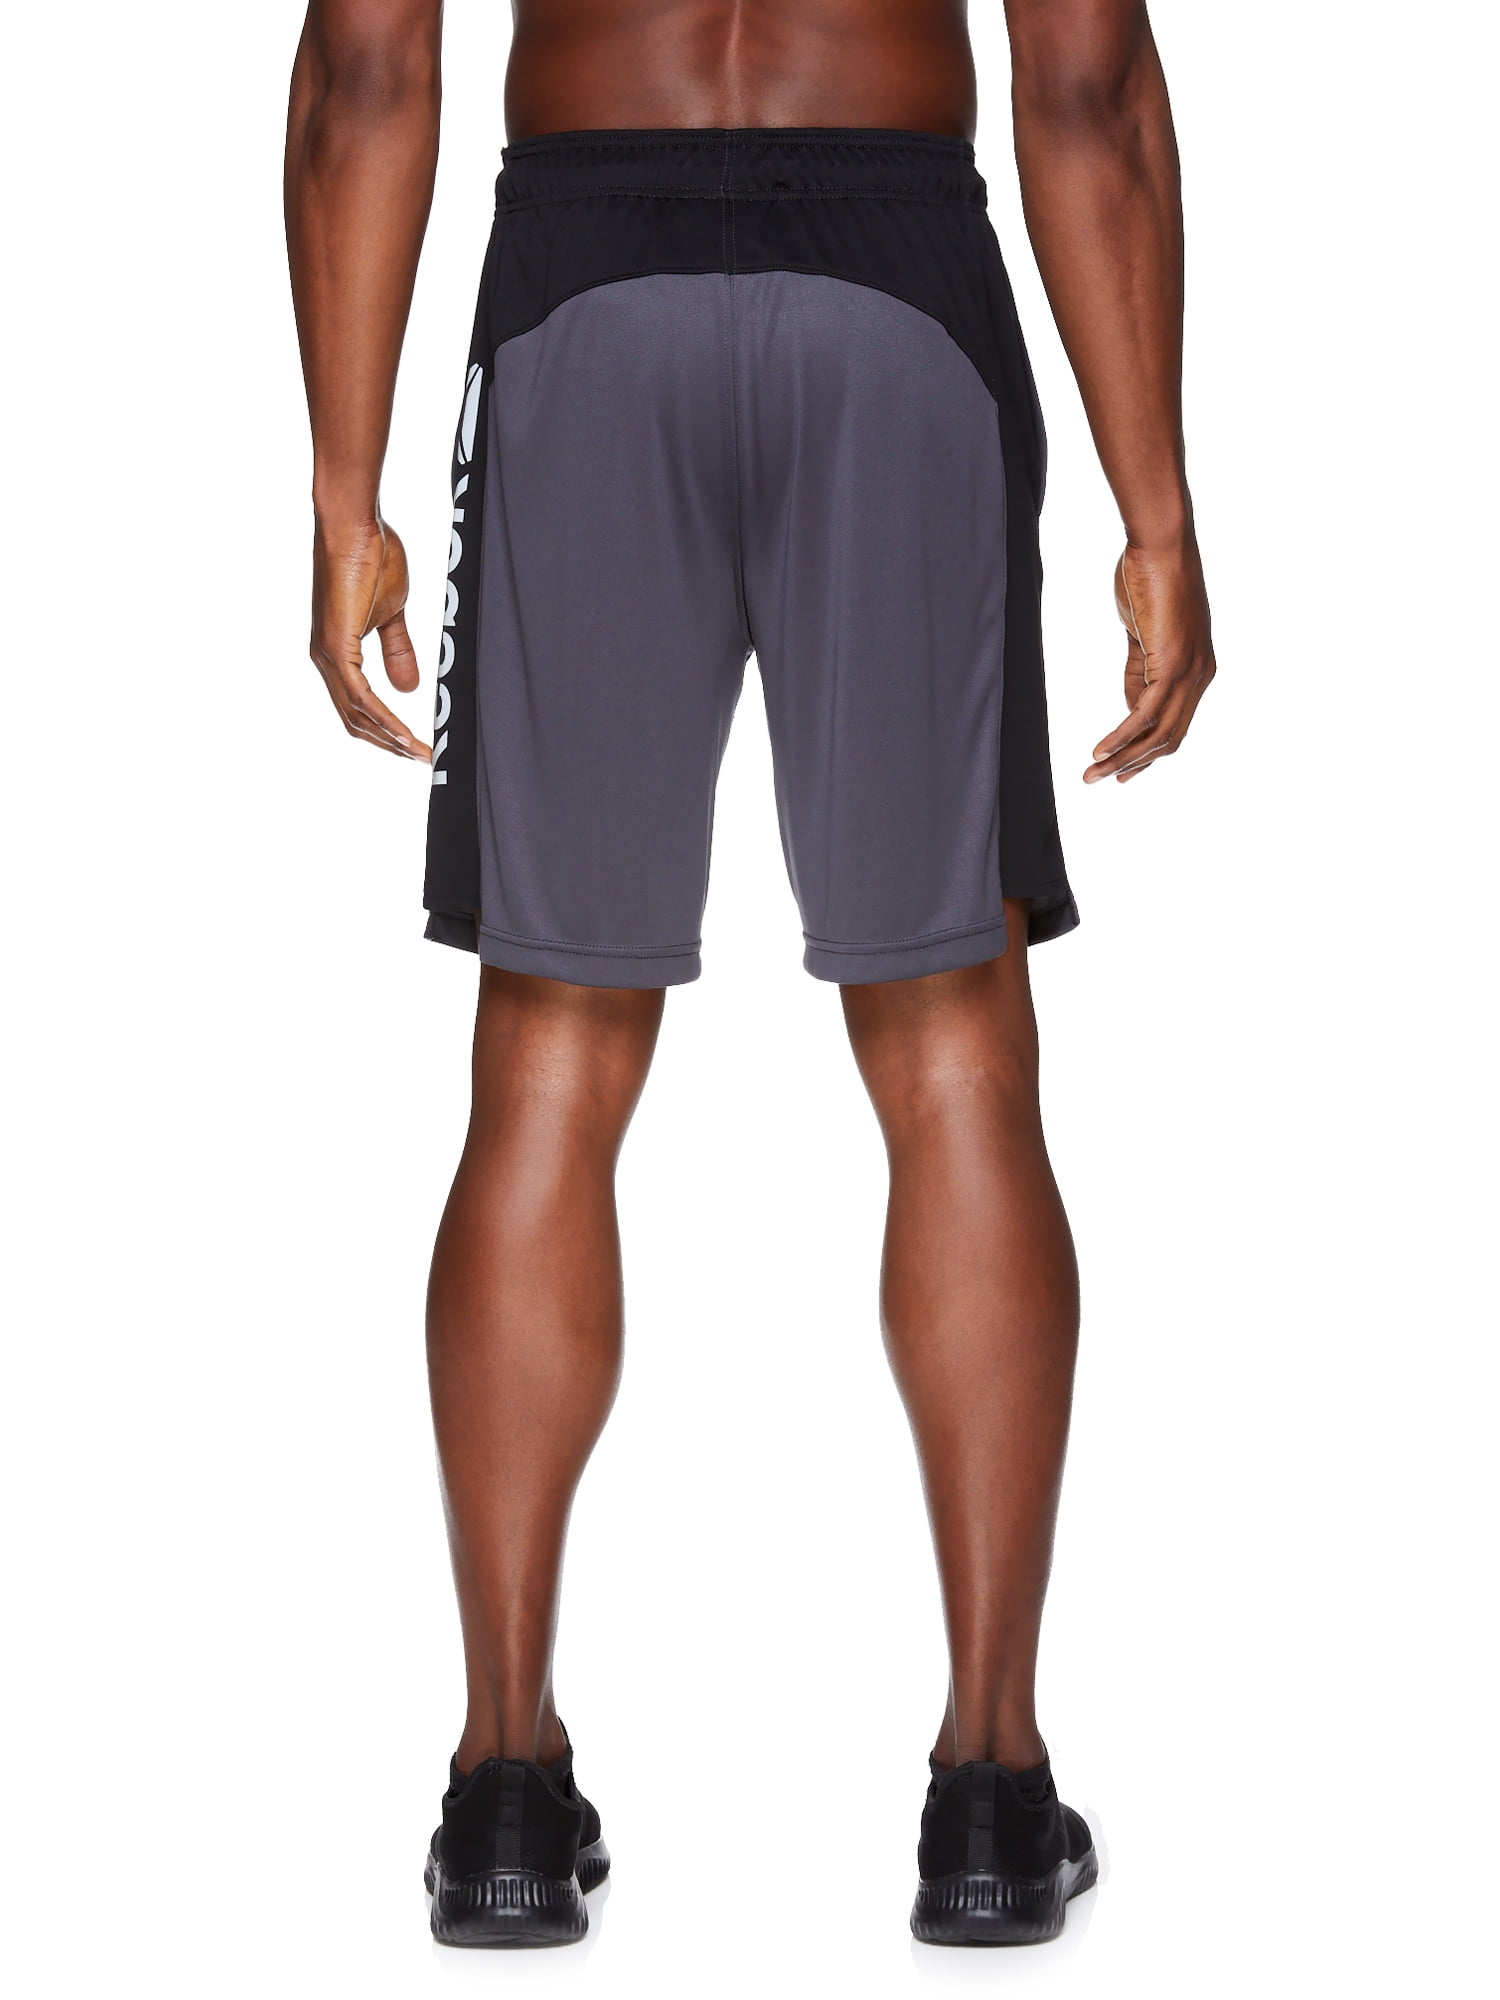 Reebok Men's Big Active Knit Training Shorts - Walmart.com